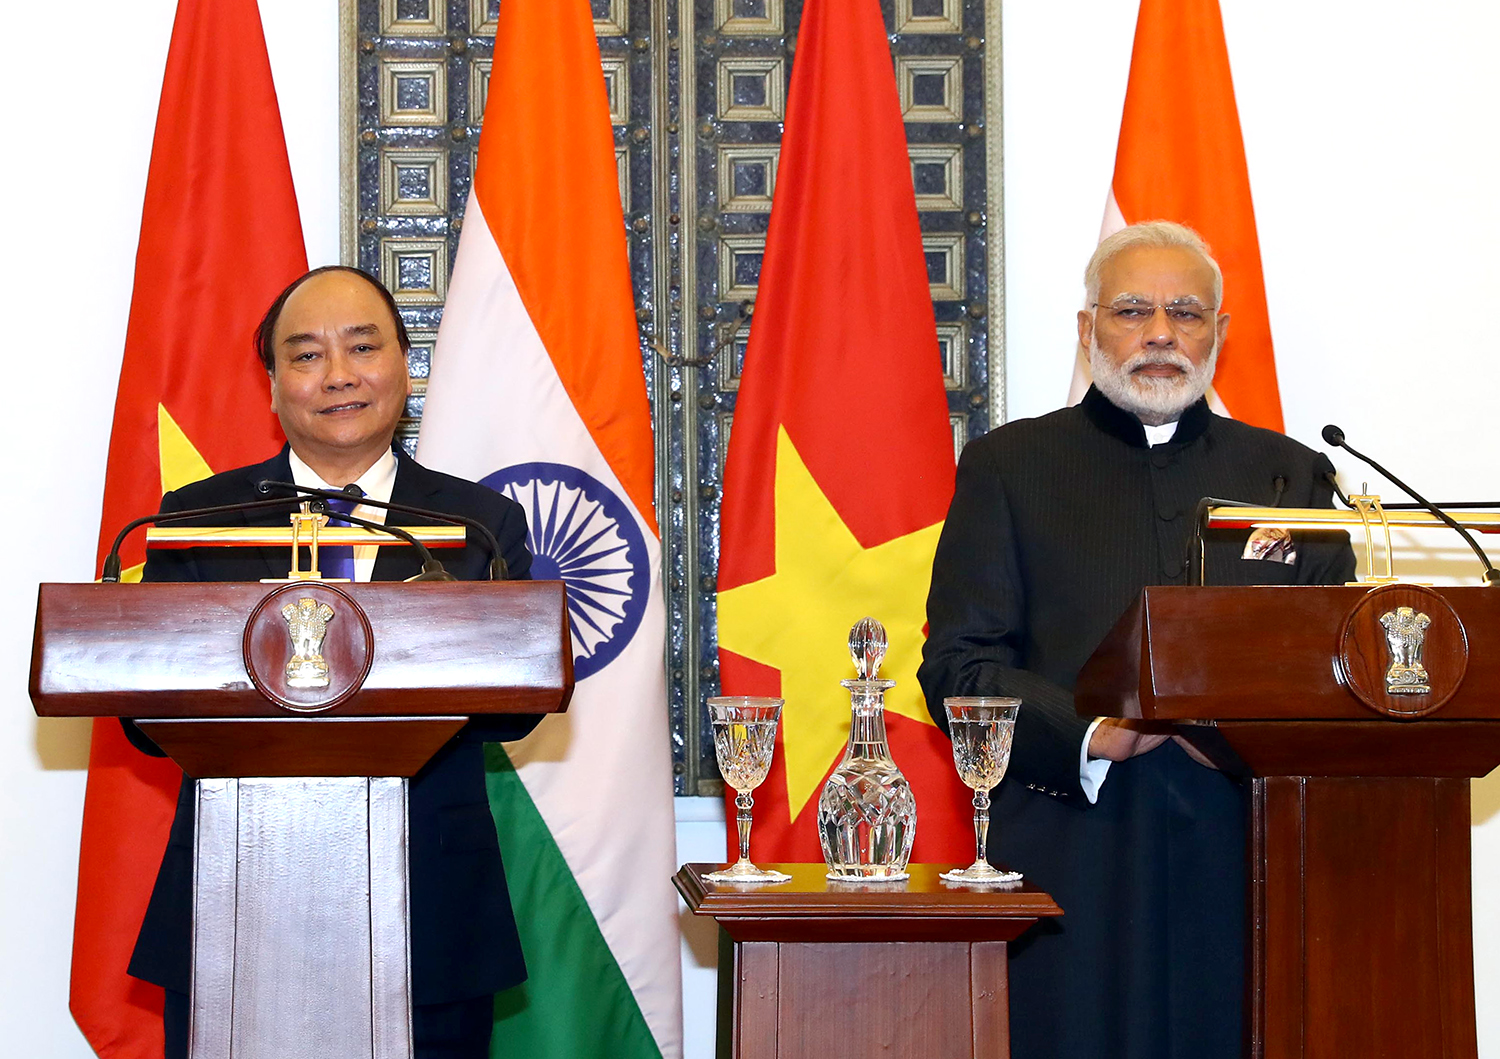 Hai Thủ tướng Việt Nam và Ấn Độ hội đàm